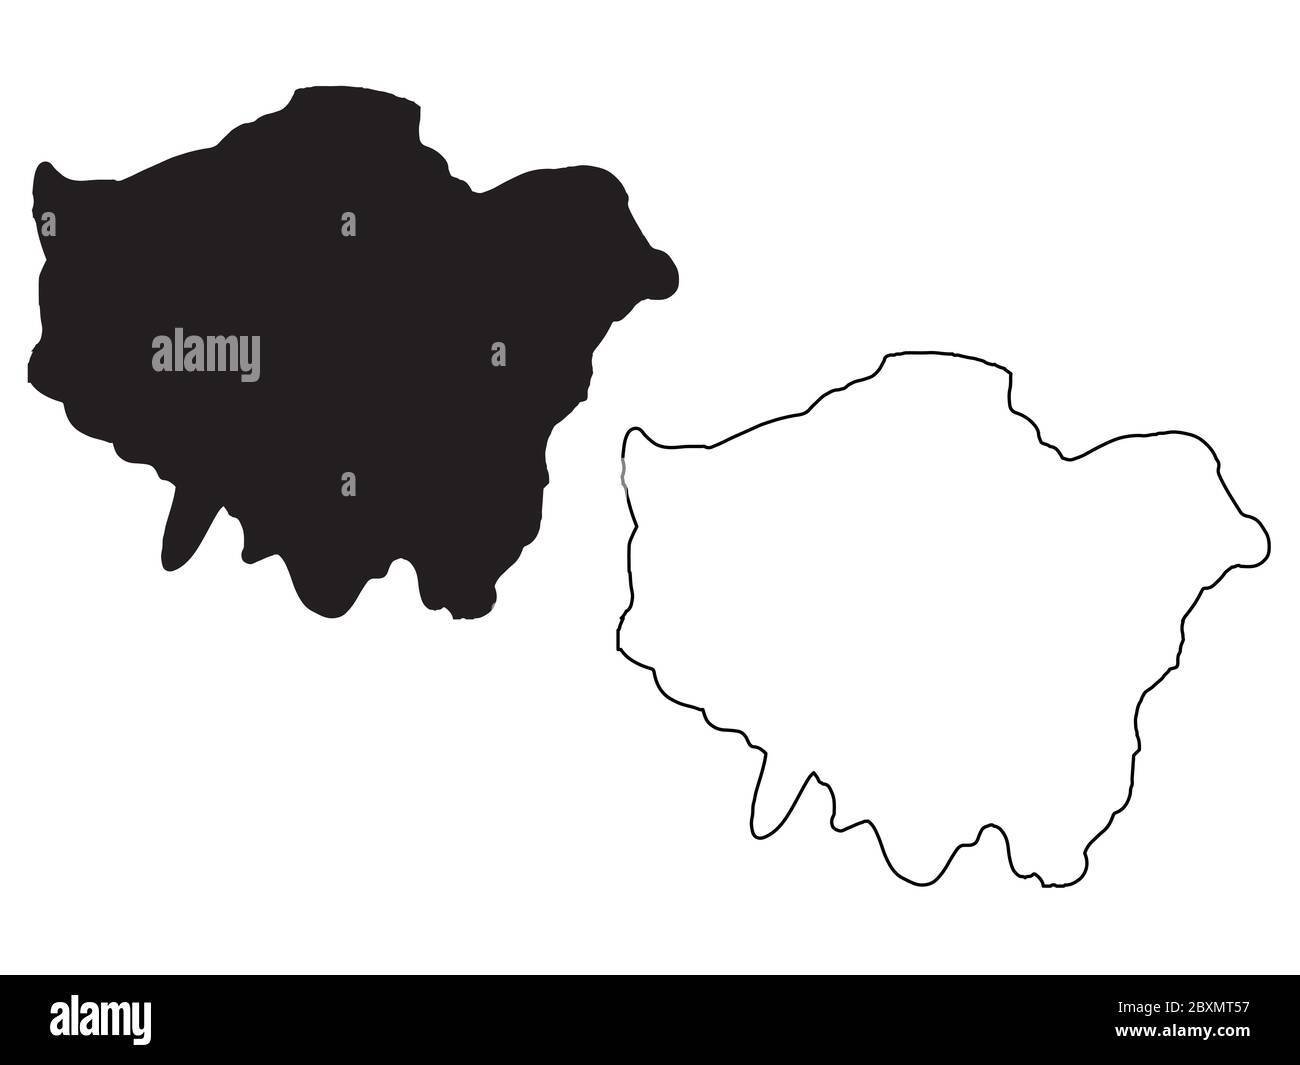 Karte von Greater London. Schwarze und umrissfarbige Karten. EPS-Vektordatei. Stock Vektor